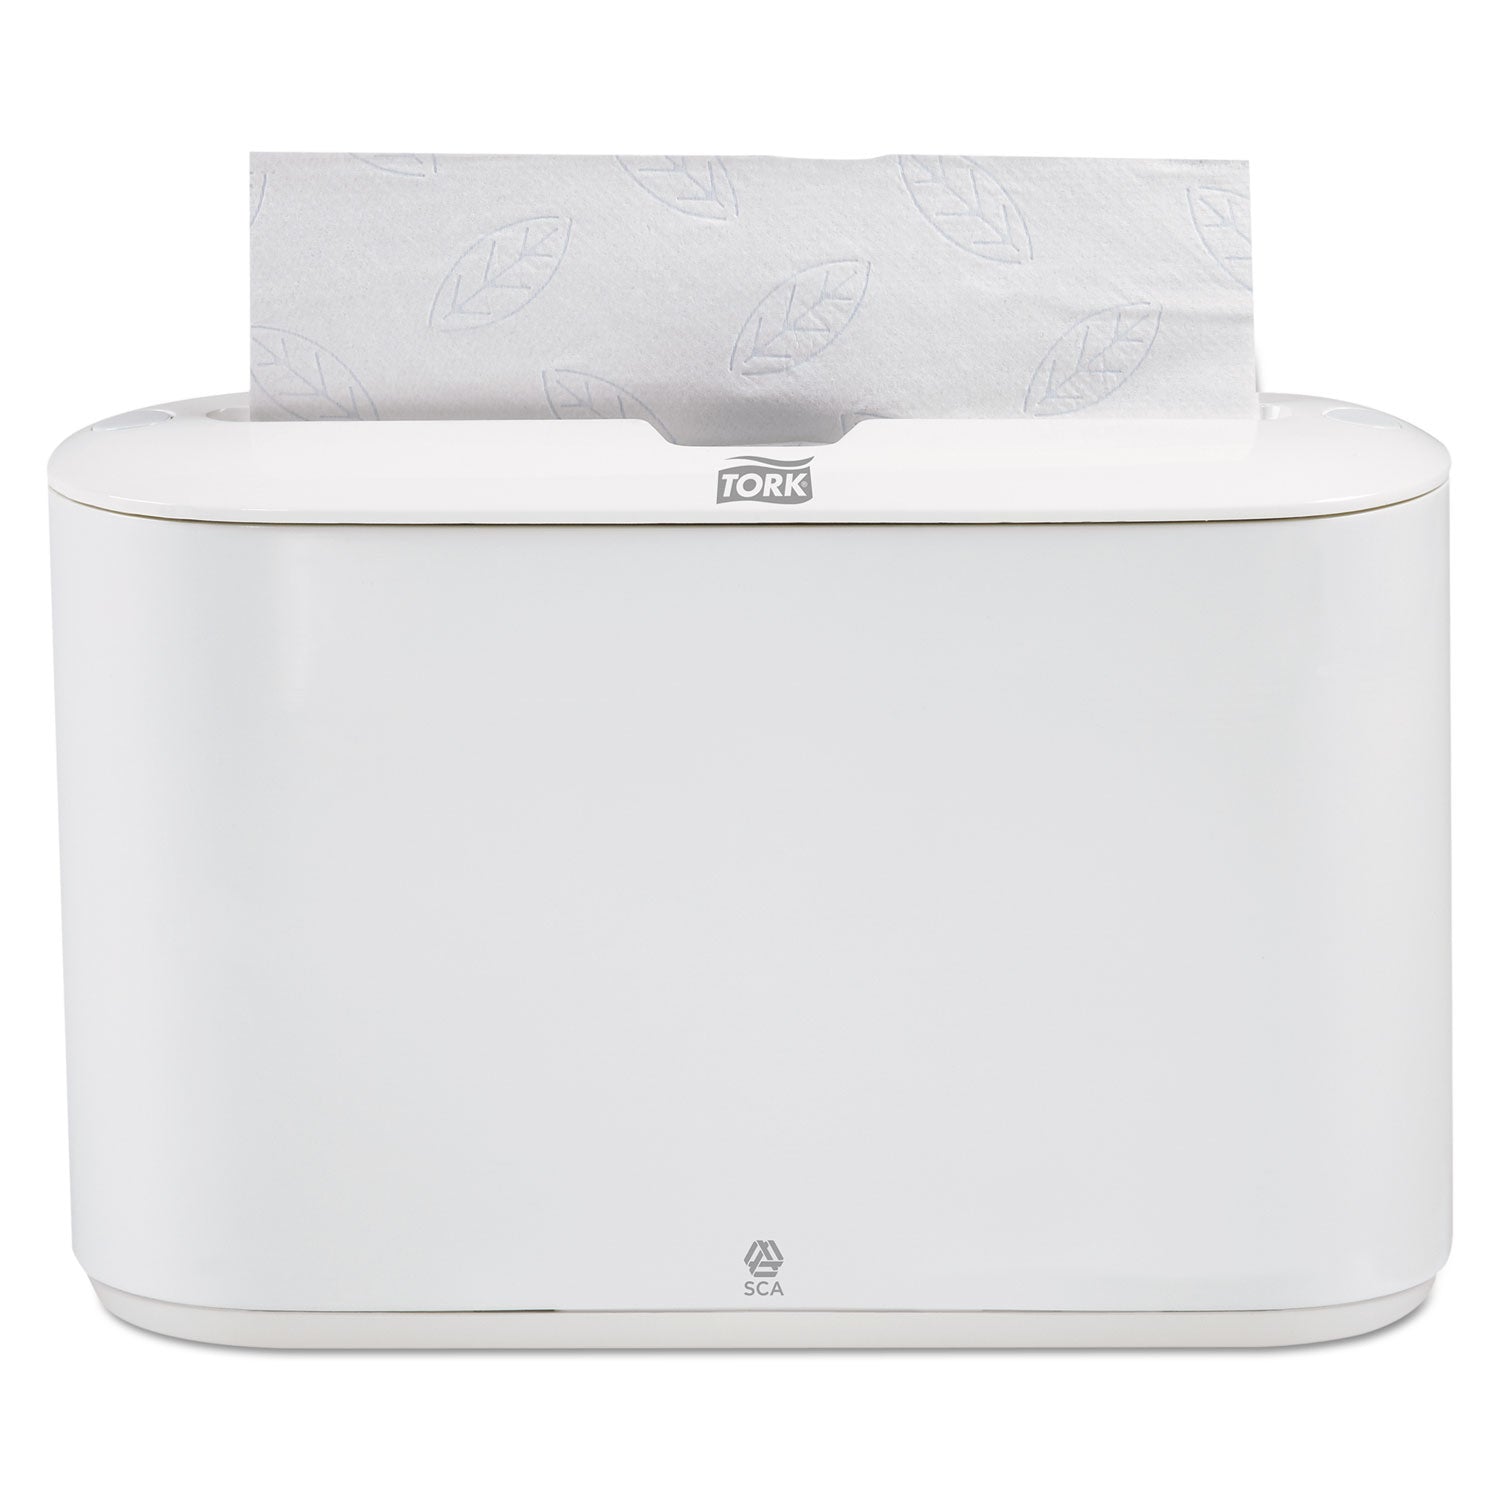 xpress-countertop-towel-dispenser-1268-x-456-x-792-white_trk302020 - 2